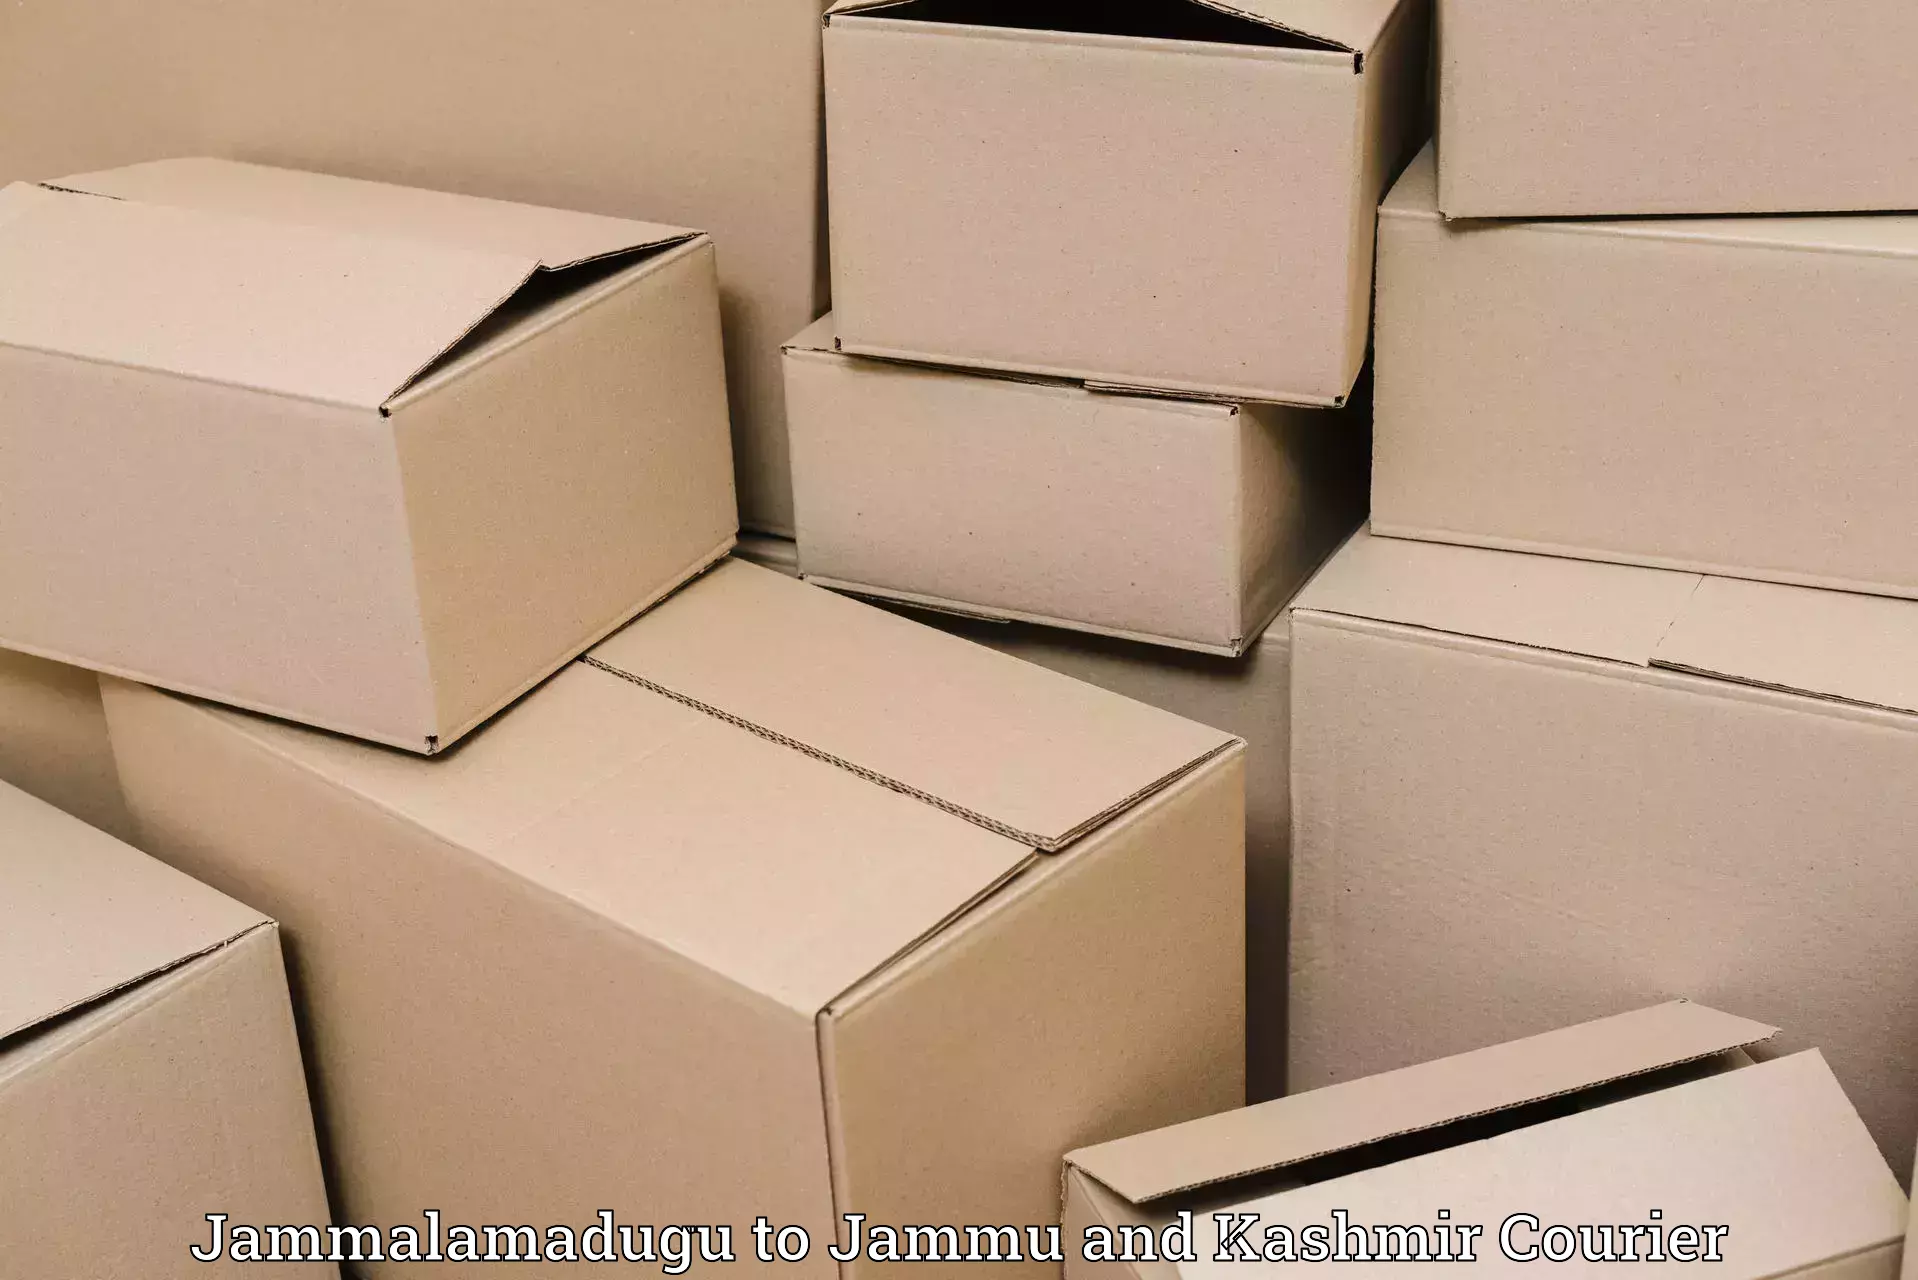 Shipping and handling Jammalamadugu to Chenani